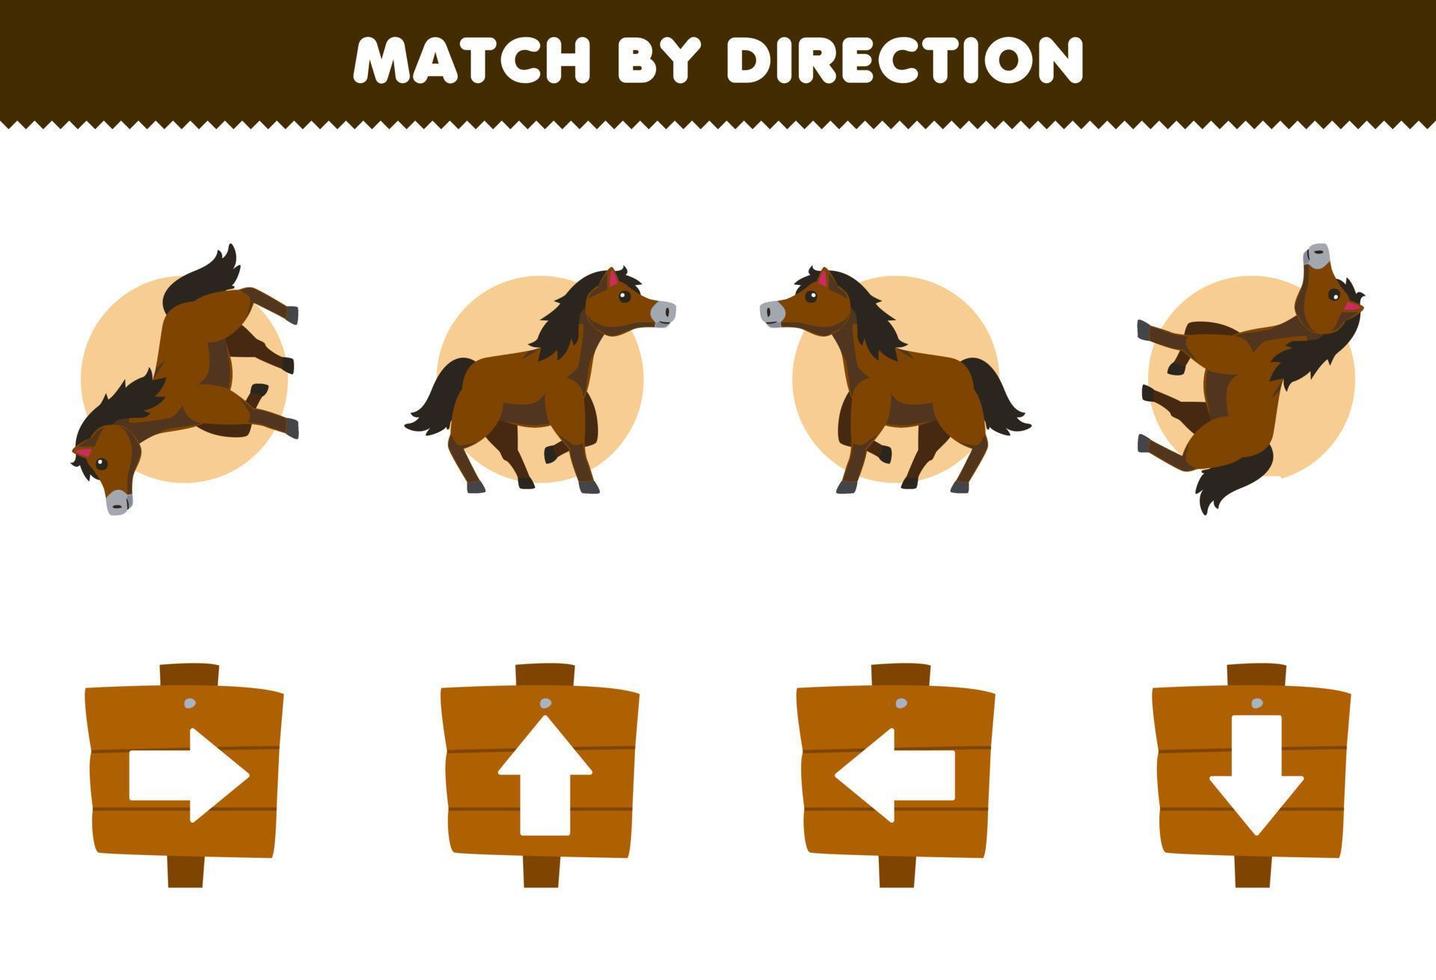 bildungsspiel für kinder vergleich nach richtung links rechts nach oben oder unten orientierung des niedlichen cartoon-pferdes druckbares farmarbeitsblatt vektor